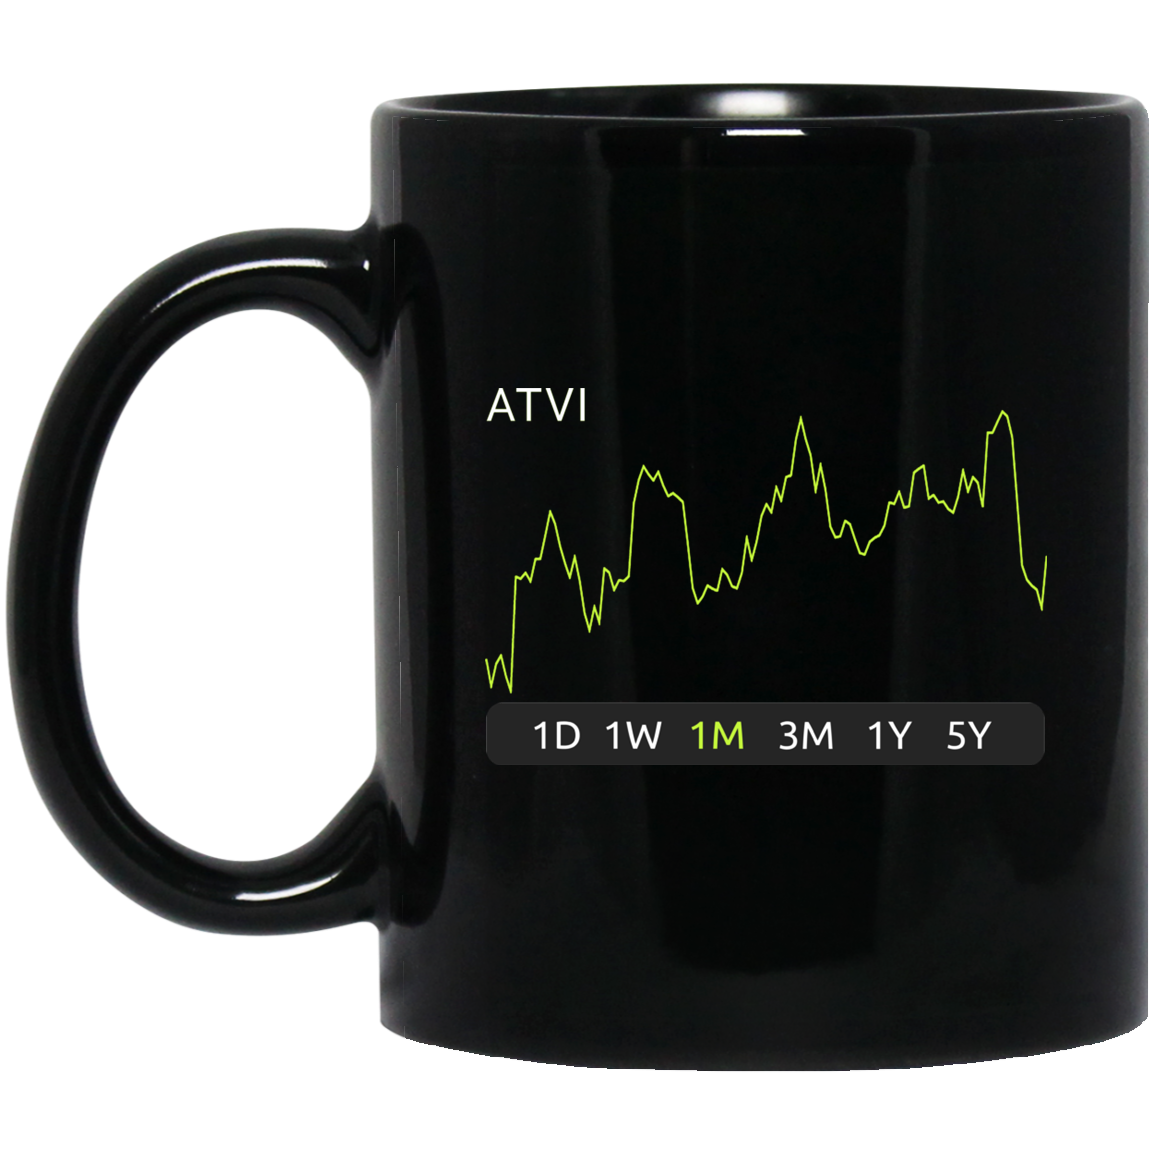 ATVI Stock 1m Mug